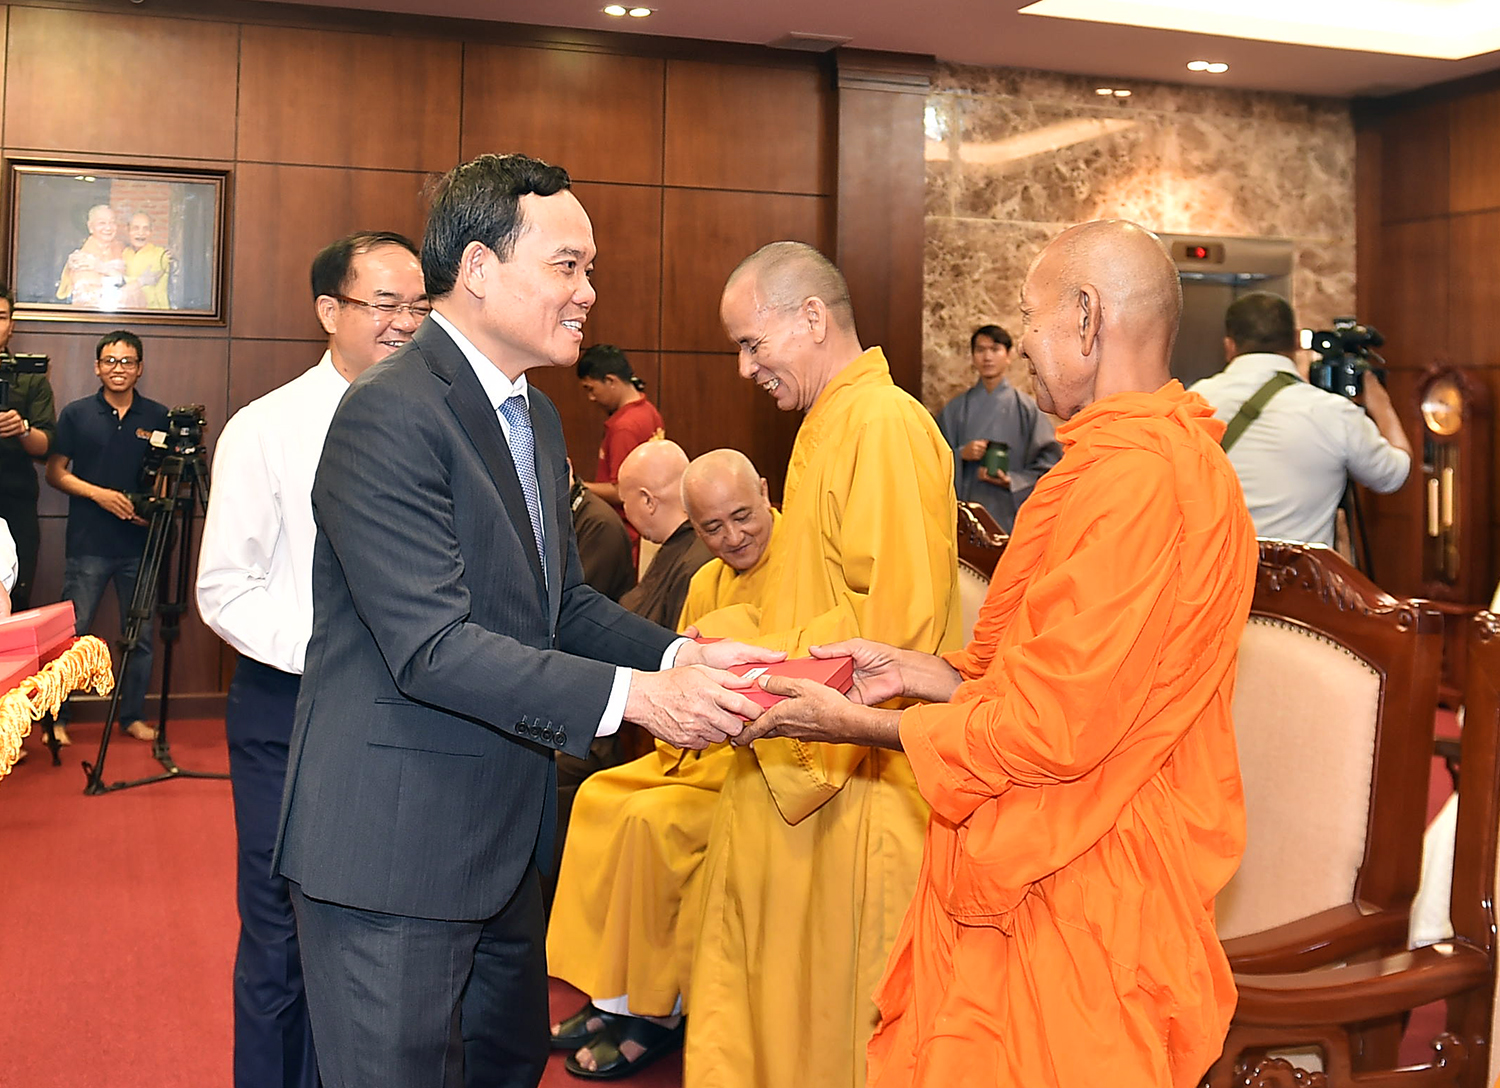 Phó Thủ tướng tặng quà lưu niệm chư tôn đức giáo phẩm lãnh đạo Giáo hội Phật giáo Việt Nam. Ảnh: VGP